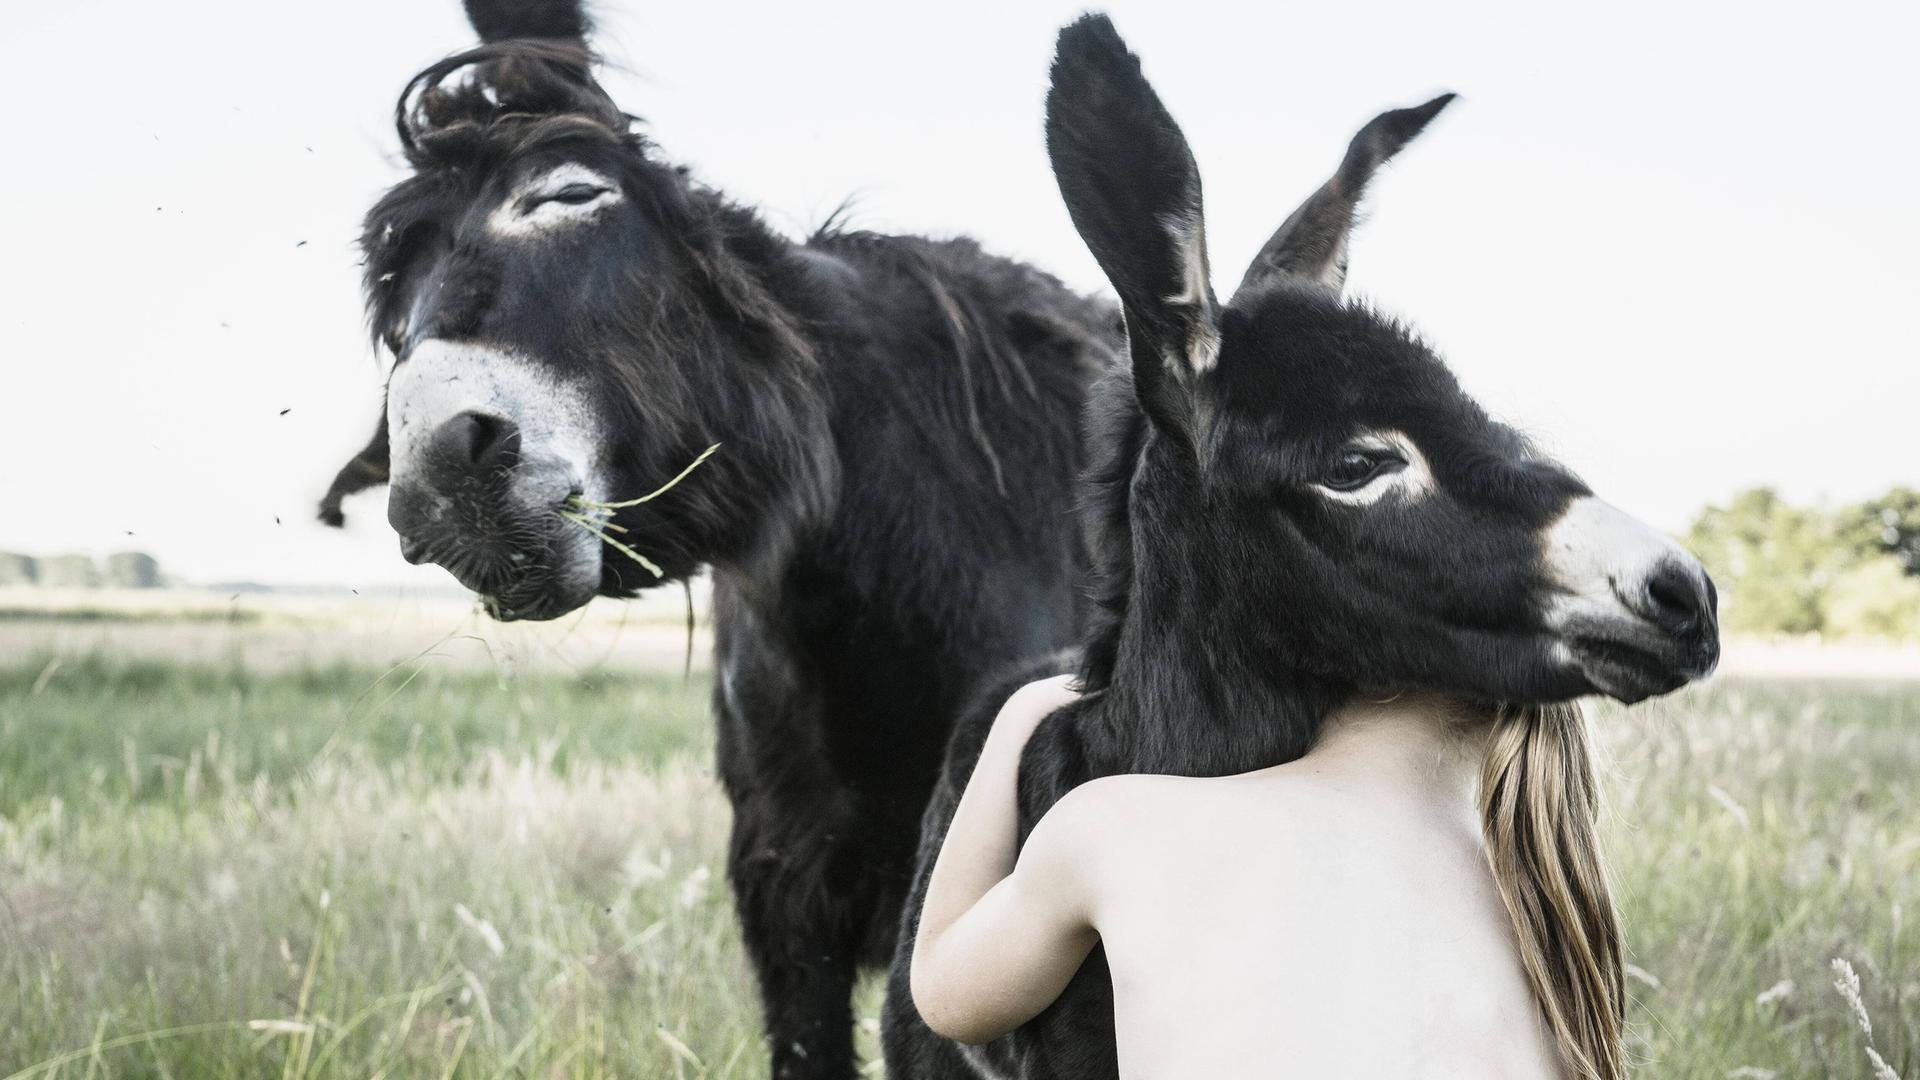 Ein Mädchen umarmt einen Esel, der nackte Oberkörper ist von hinten zu sehen, der Kopf versteckt sich hinter dem Esel.